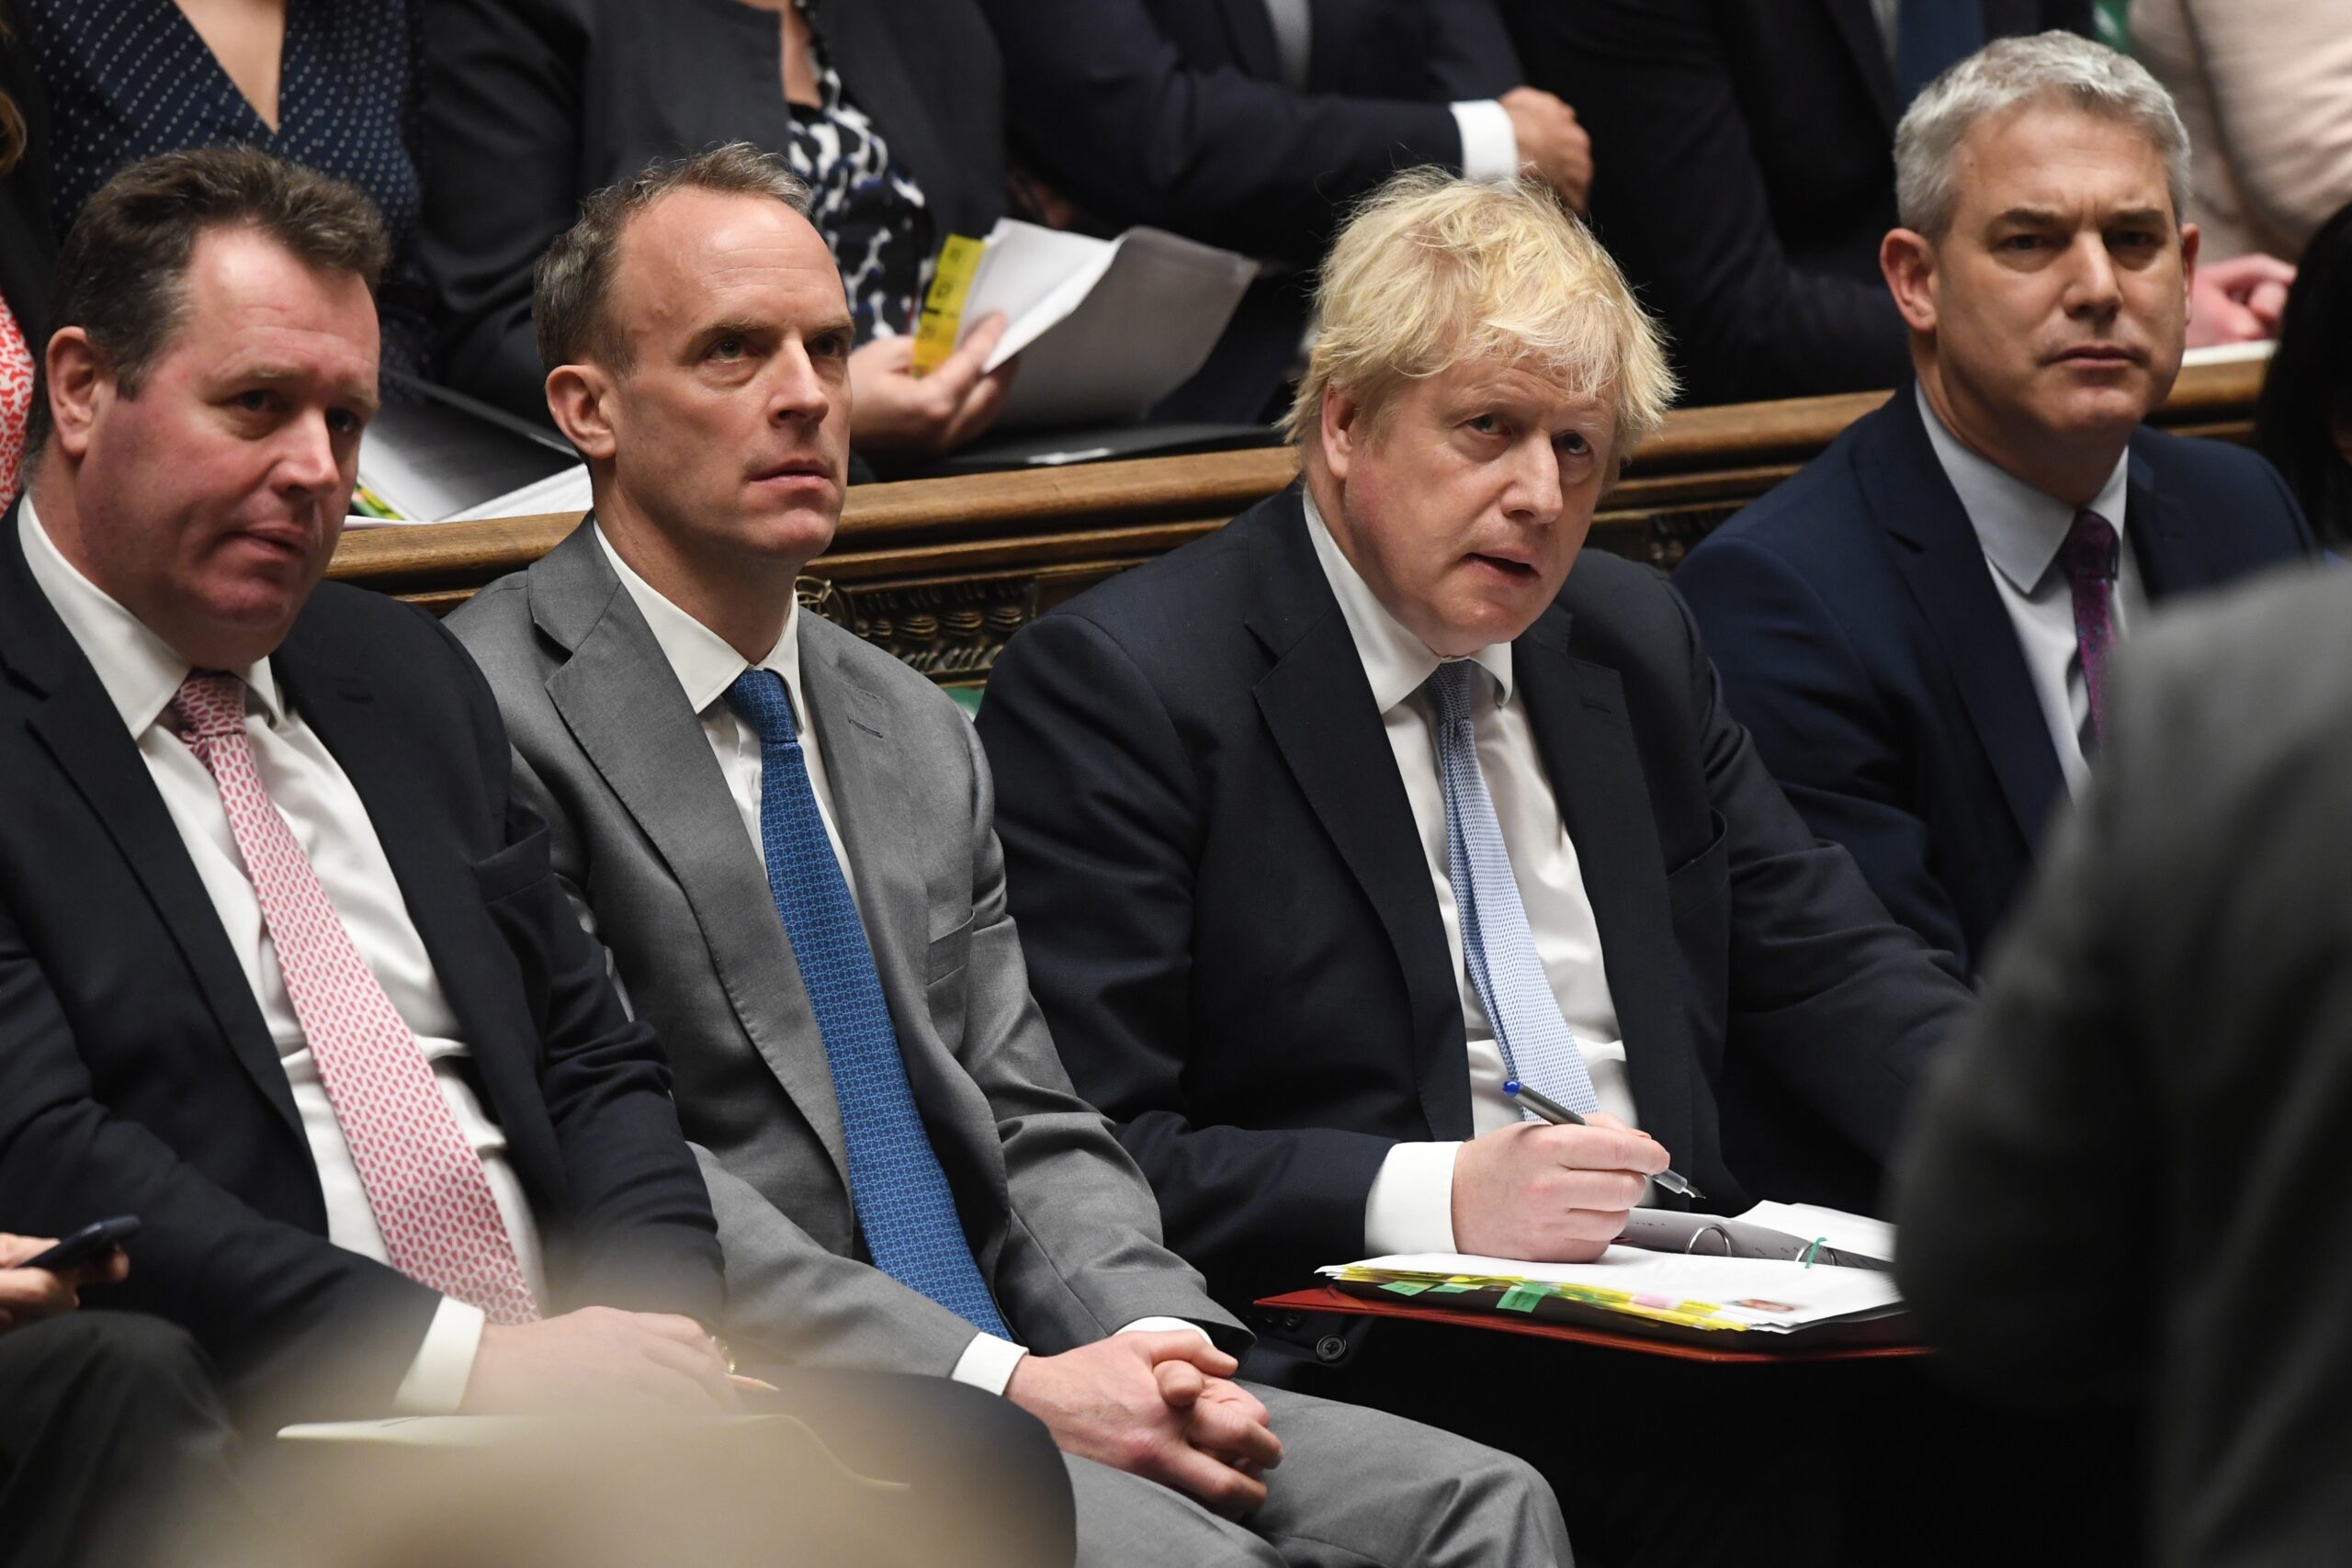 Champán, patatas y espumillón: el constante goteo de fotos comprometedoras de Boris Johnson